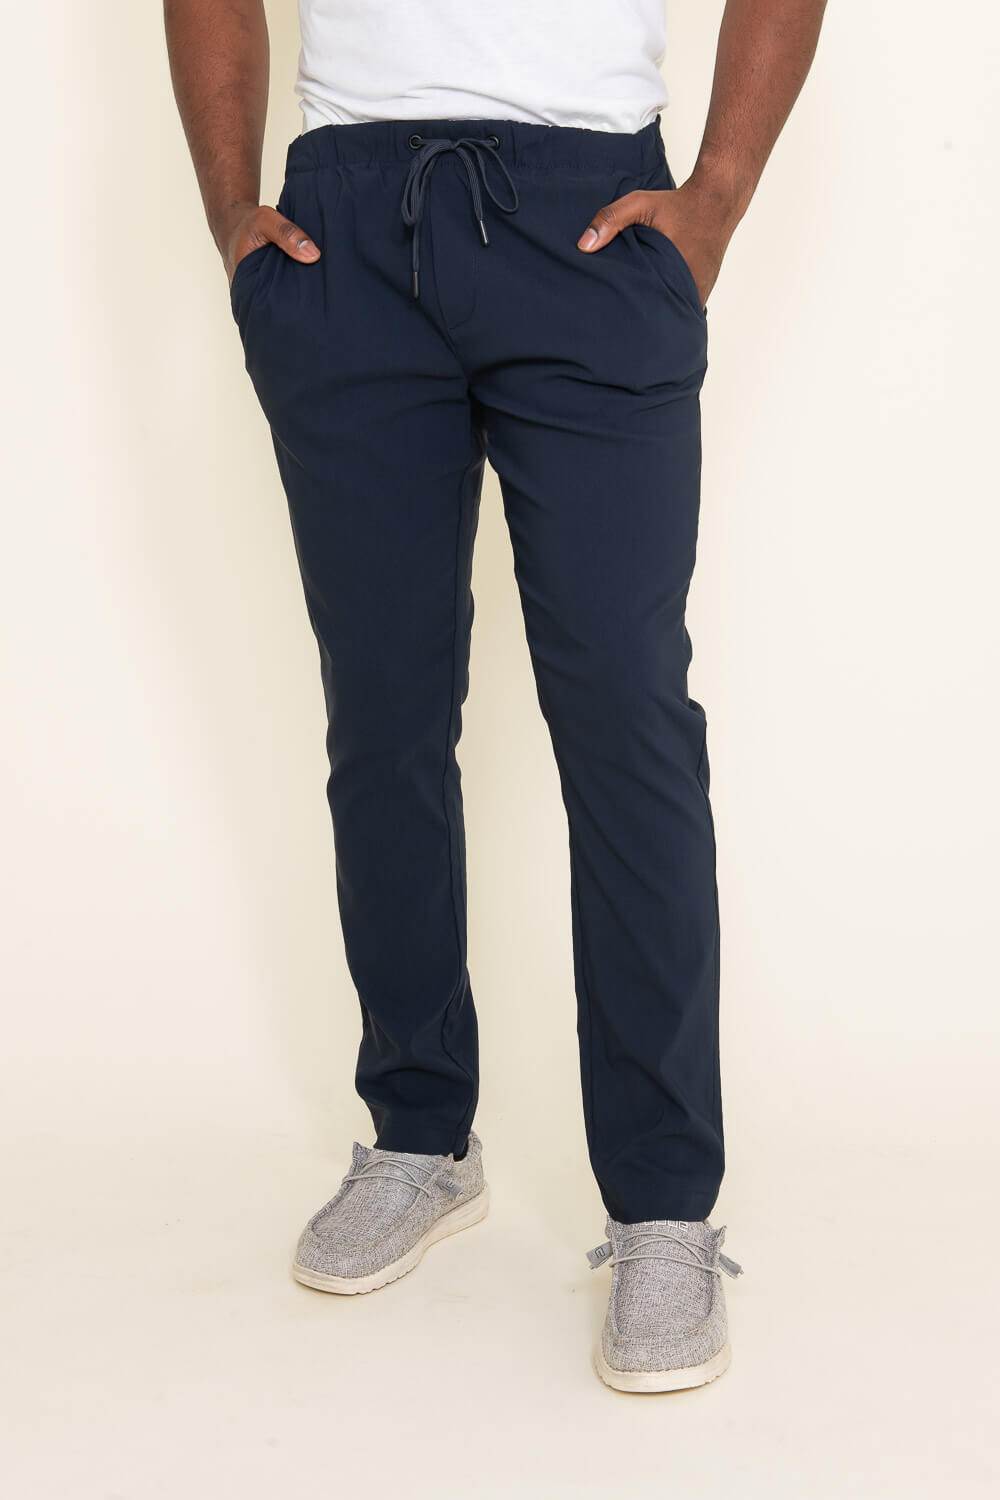 Men's Fashion Plaid Pants (Beige & Copper)